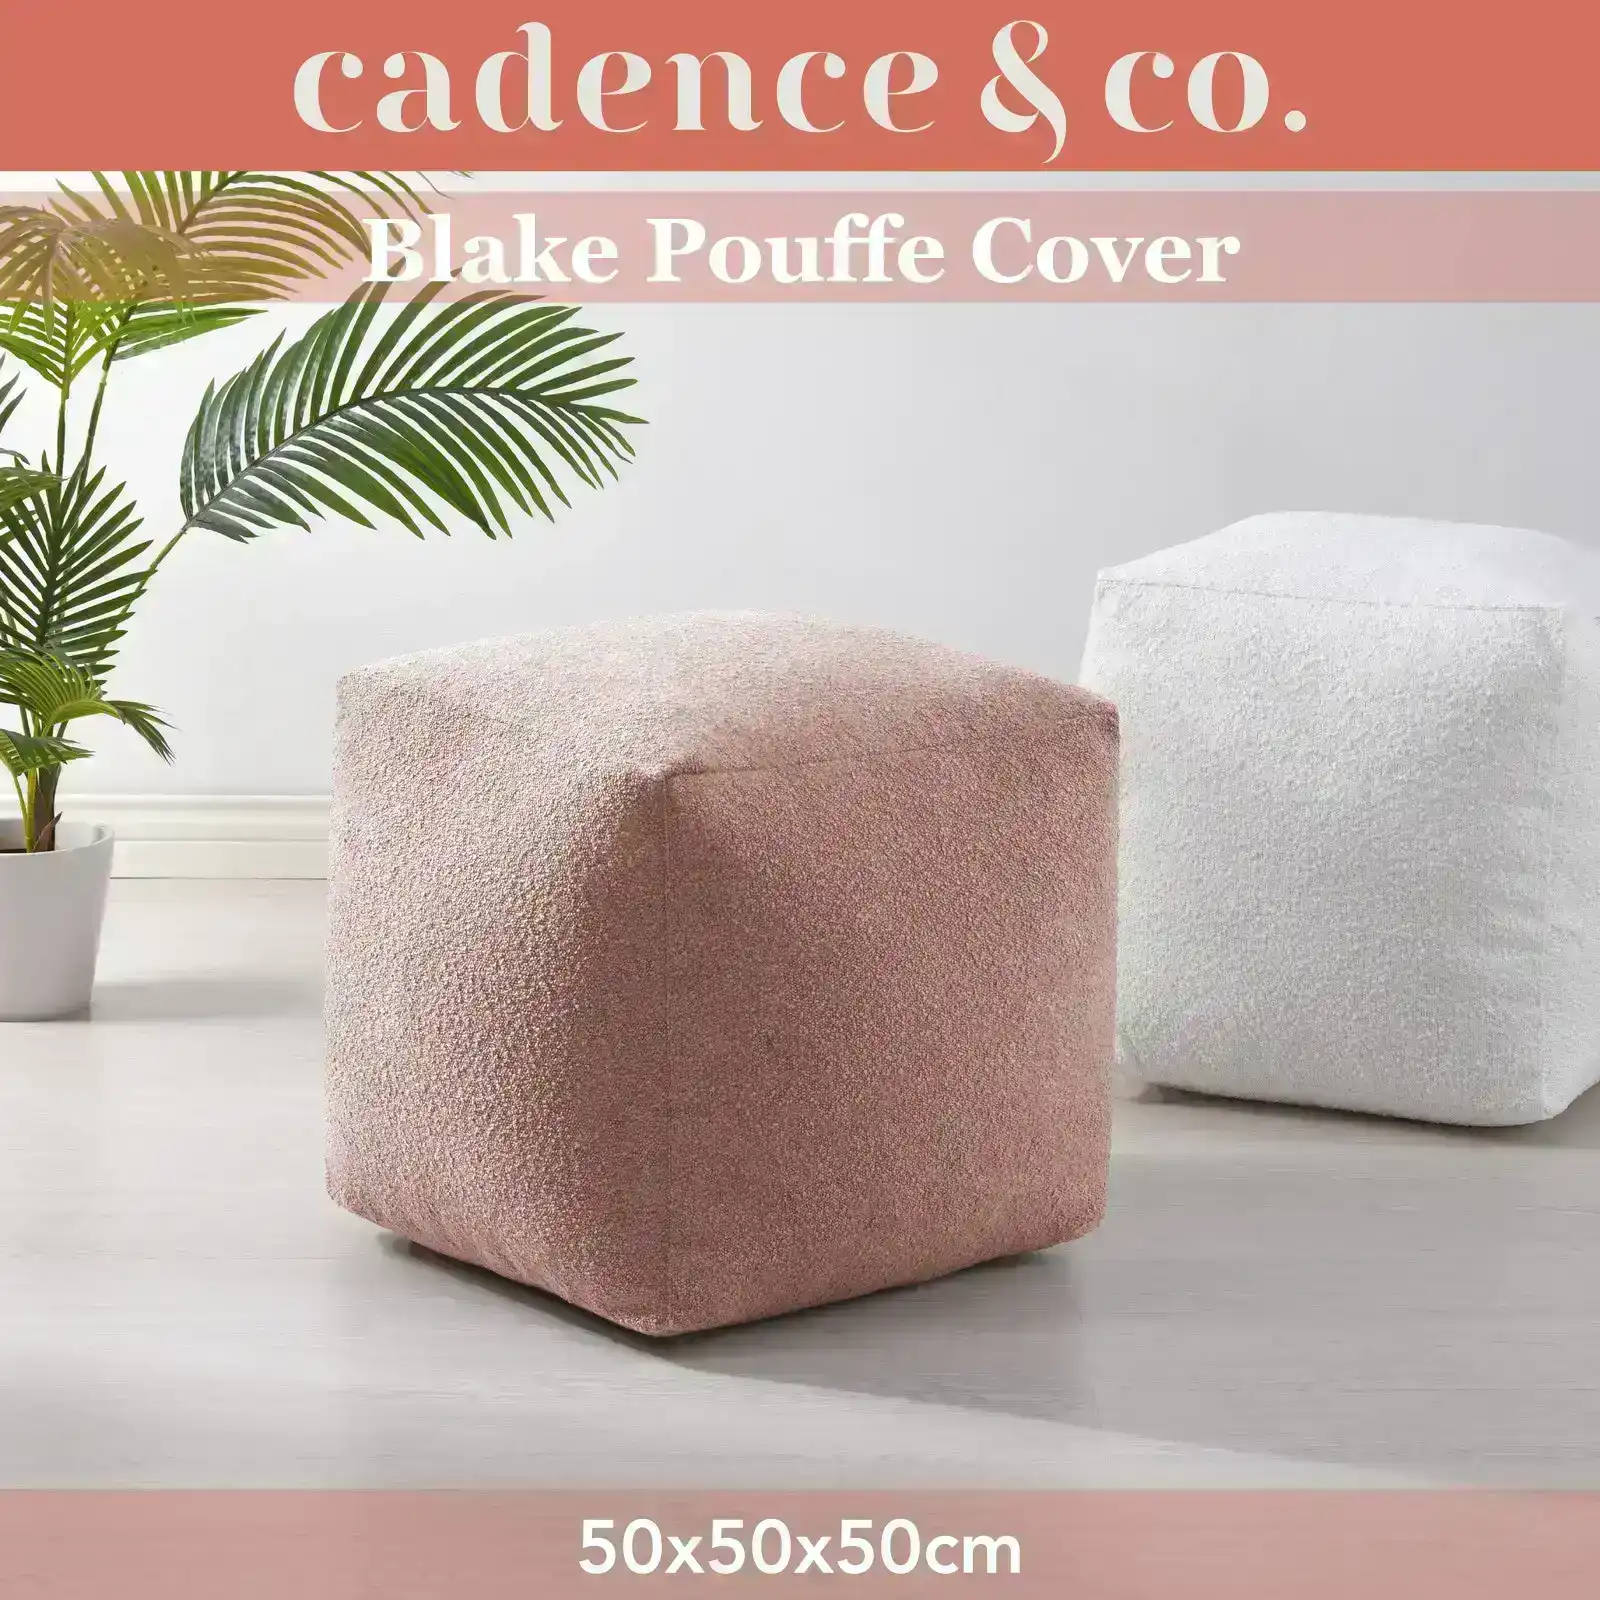 Cadence & Co. Blake Boucle Pouffe Cover Blush 50x50x50cm